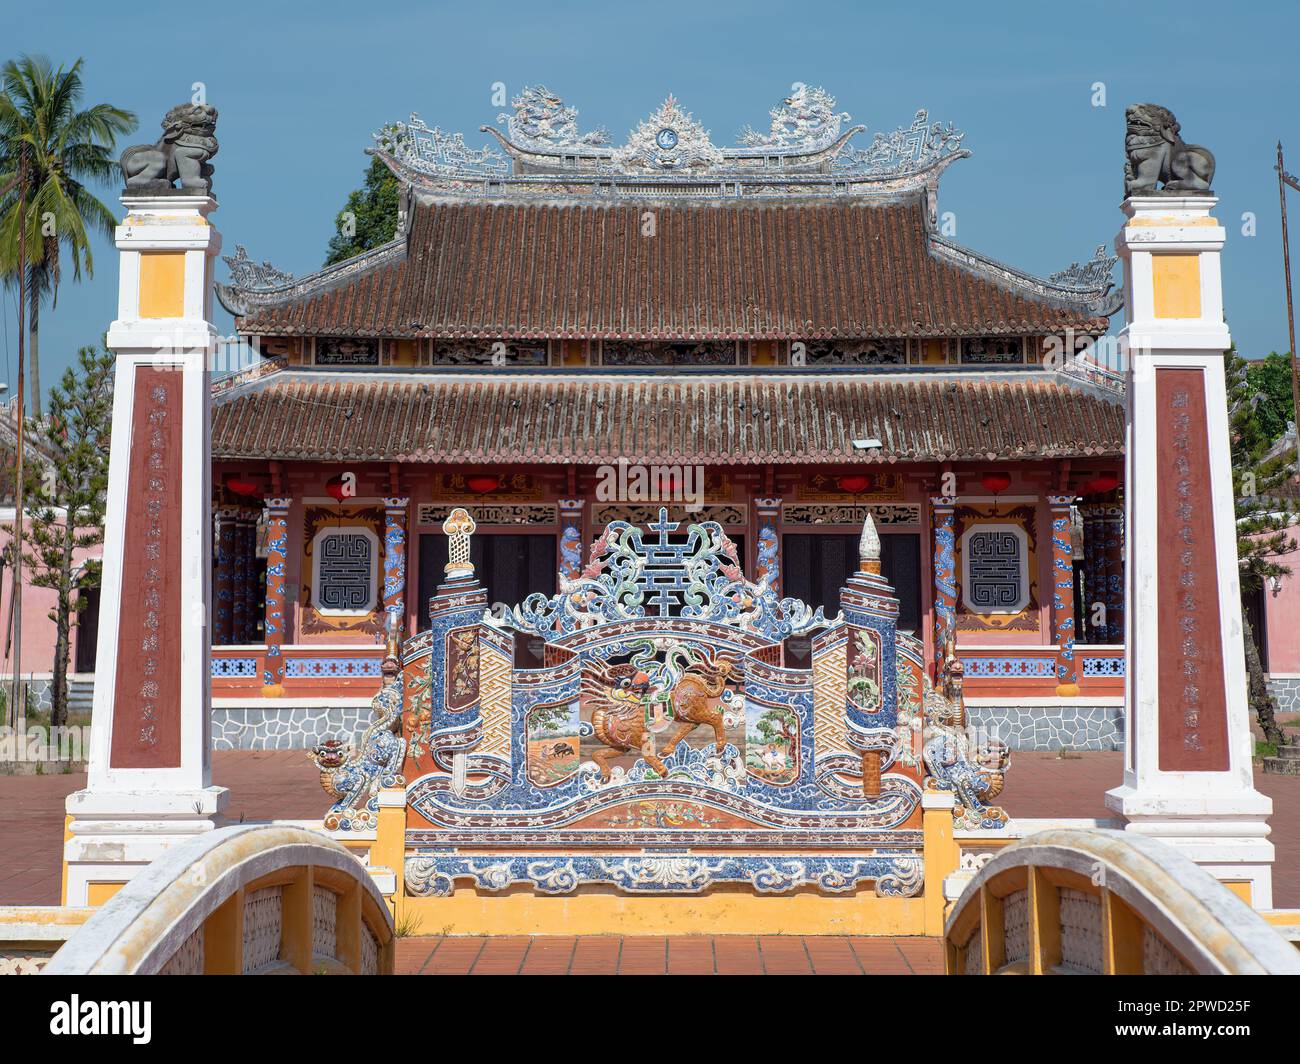 Le Temple Van Mieu à Hoi an, province de Quang Nam, Vietnam. La vieille ville de Hoi an est un site classé au patrimoine mondial, et célèbre pour son bâtiment bien conservé Banque D'Images